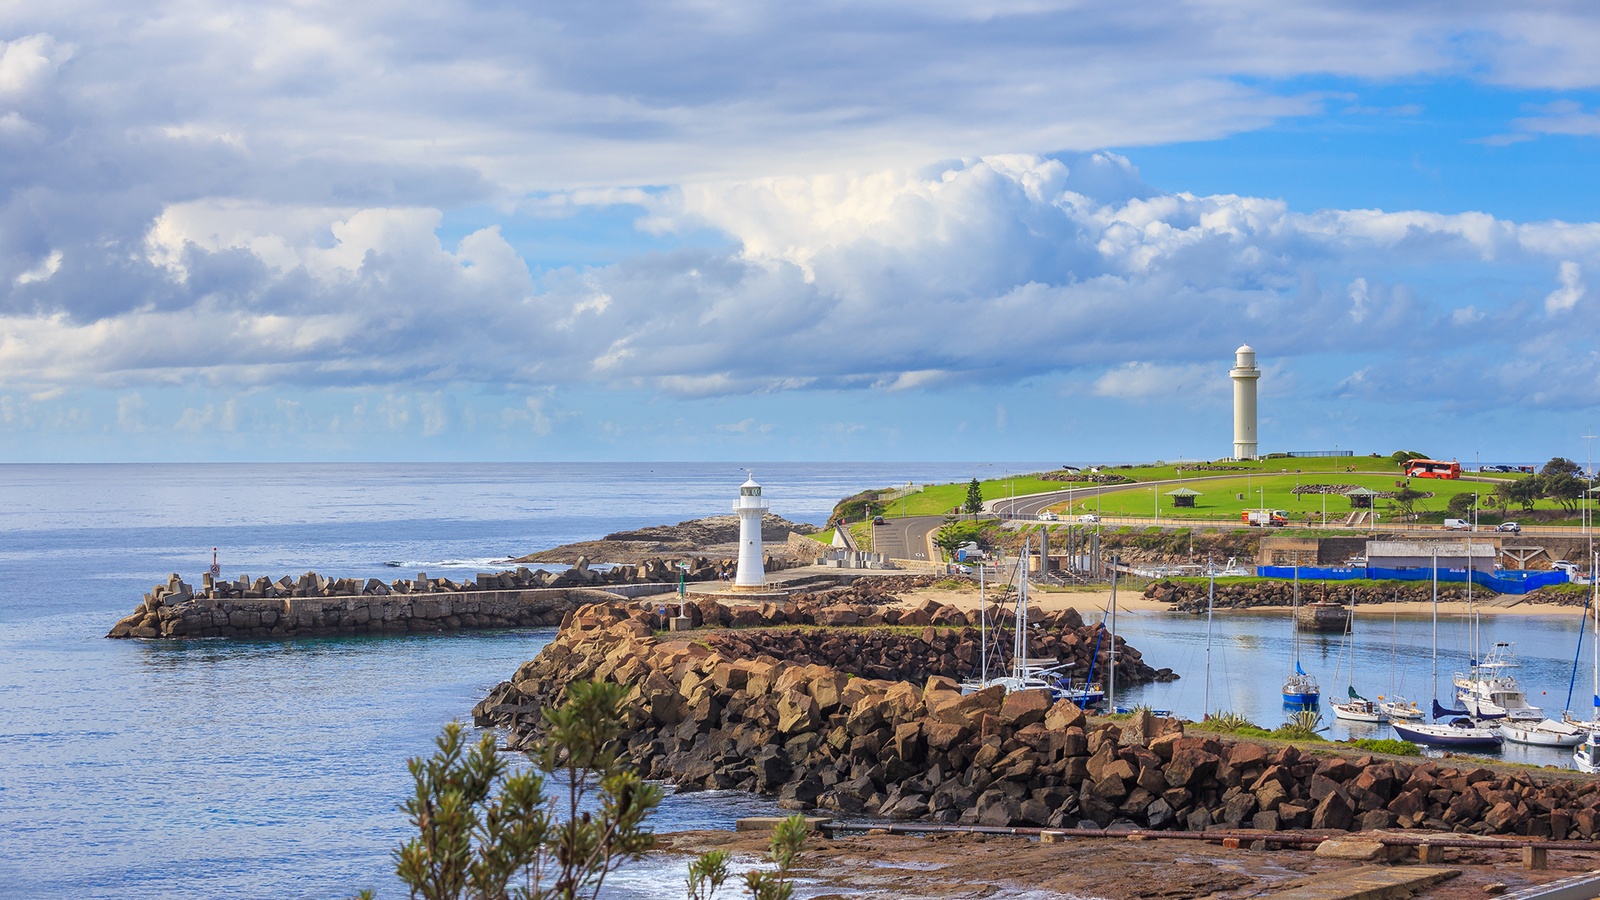 Wollongong Lighthouse